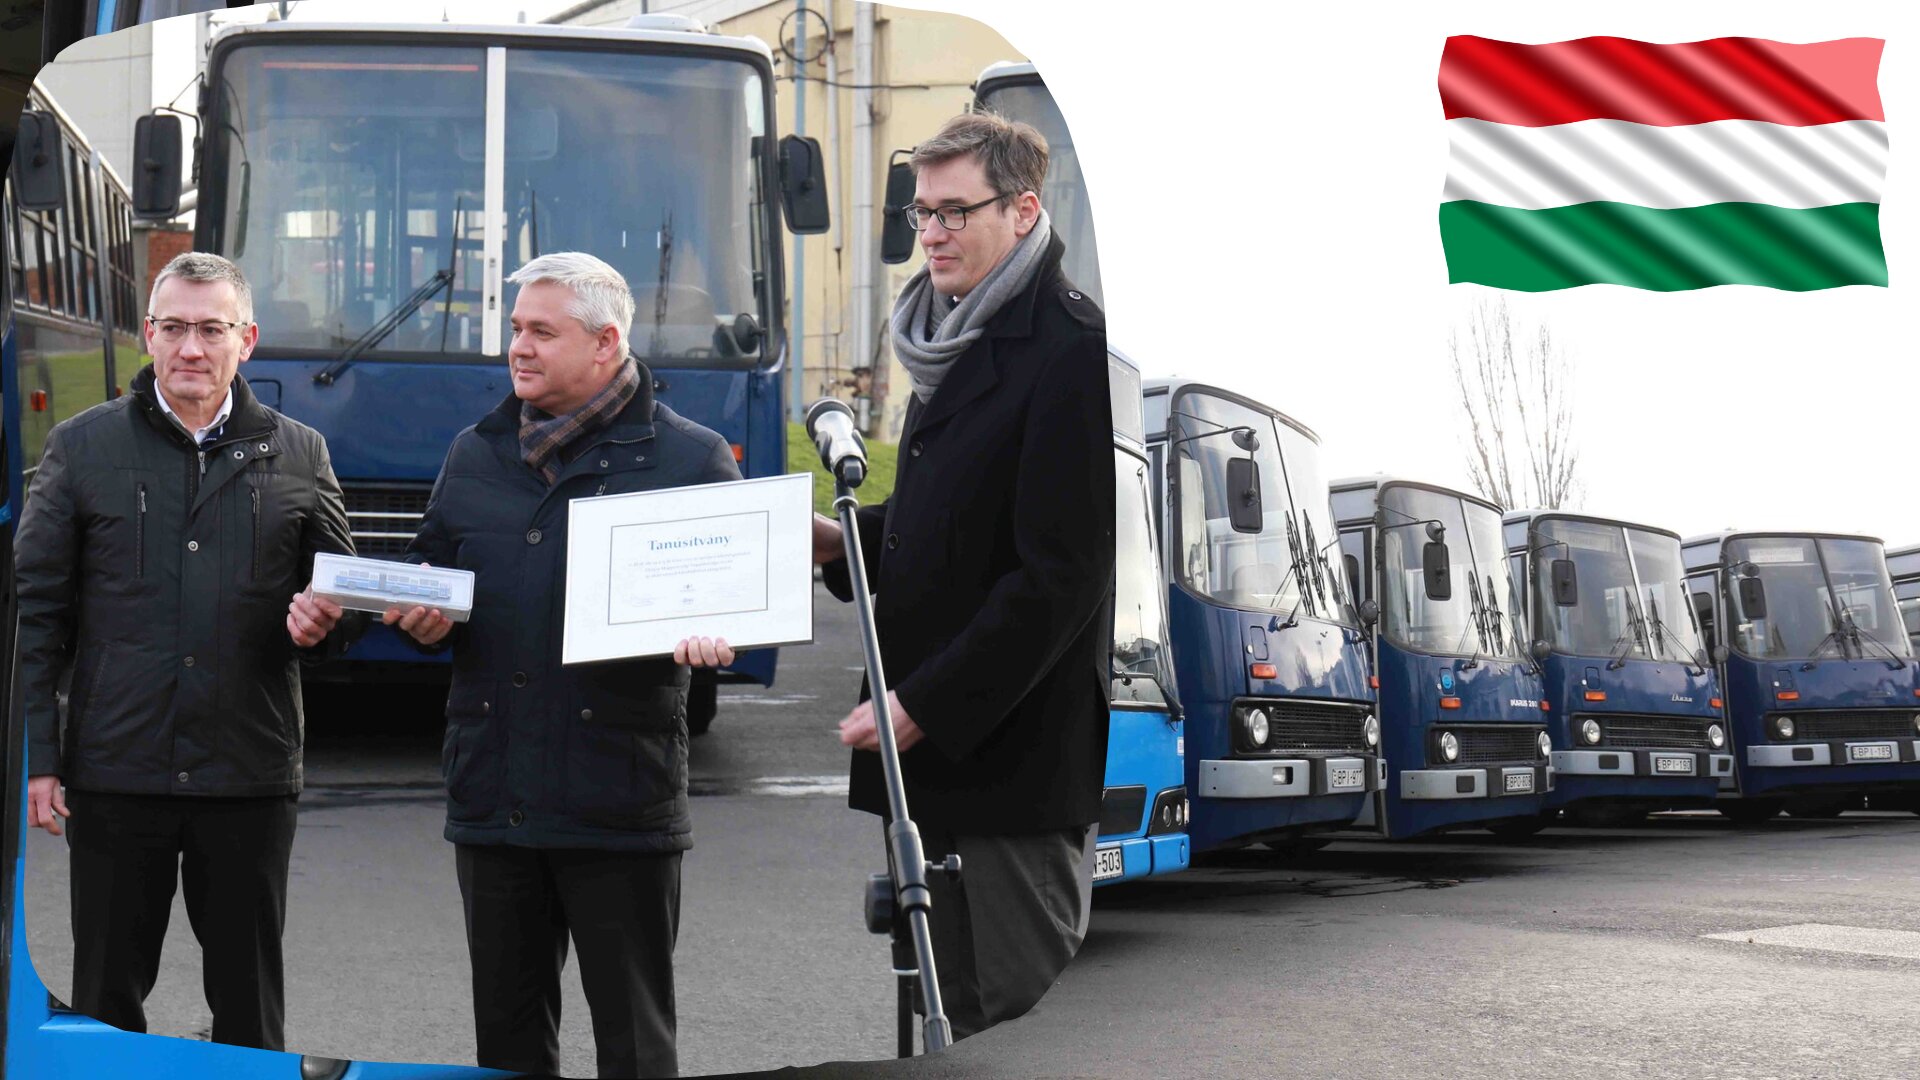 Транспортне управління Будапешта (BKV) передало на потреби України 15 автобусів

